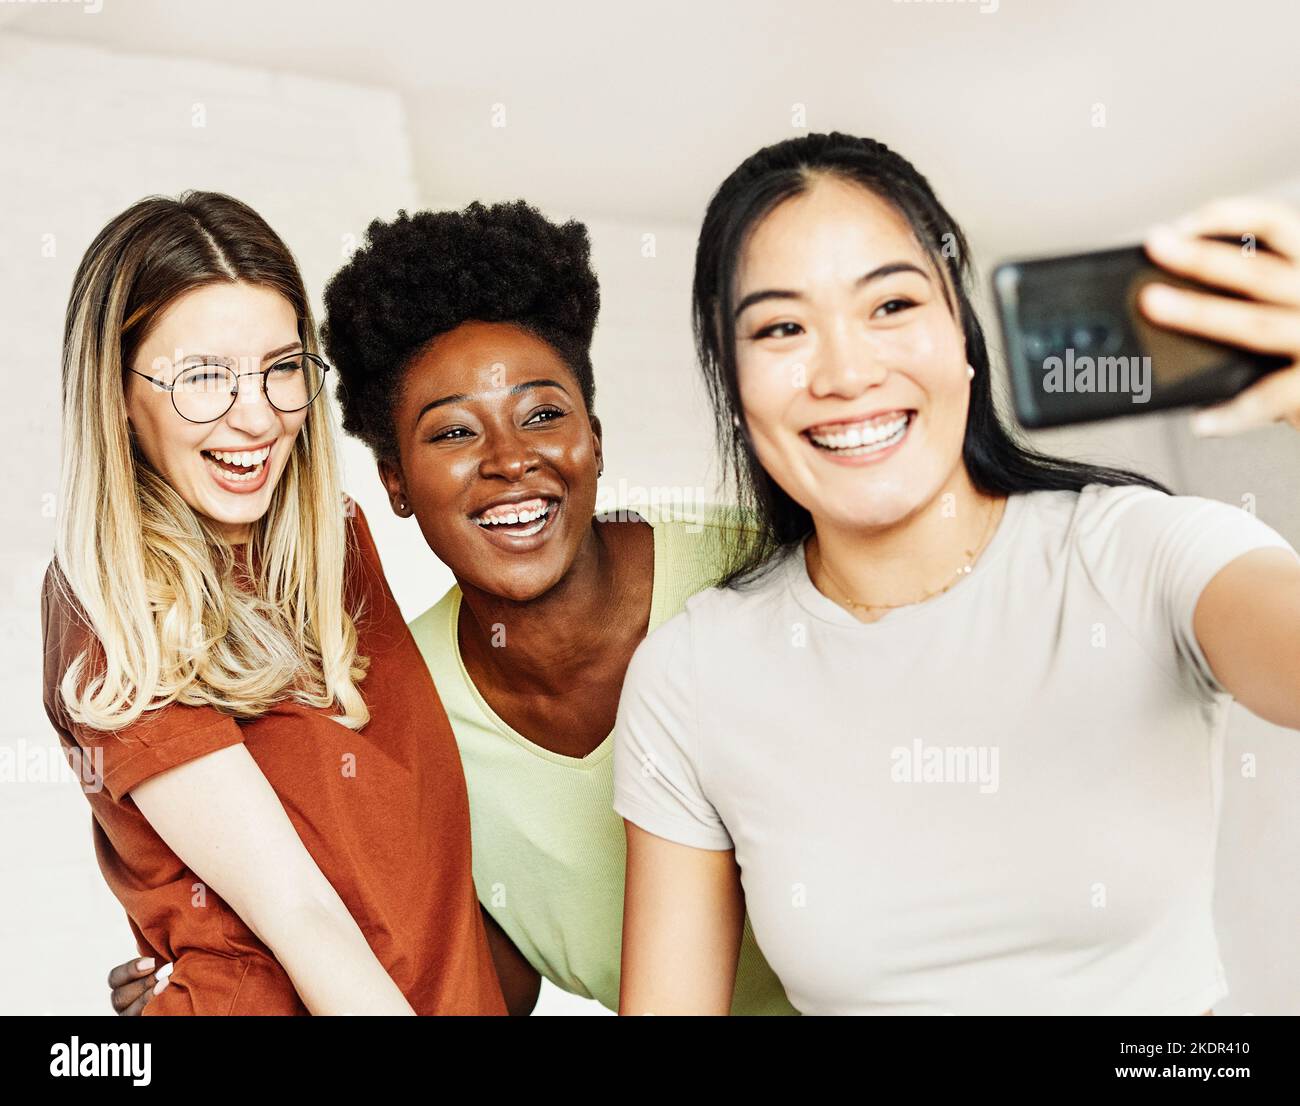 giovani adulti divertimento selfie amicizia amico felice insieme gruppo allegro sorridente diversità mista etnicità diversa nero asiatico africano americano Foto Stock